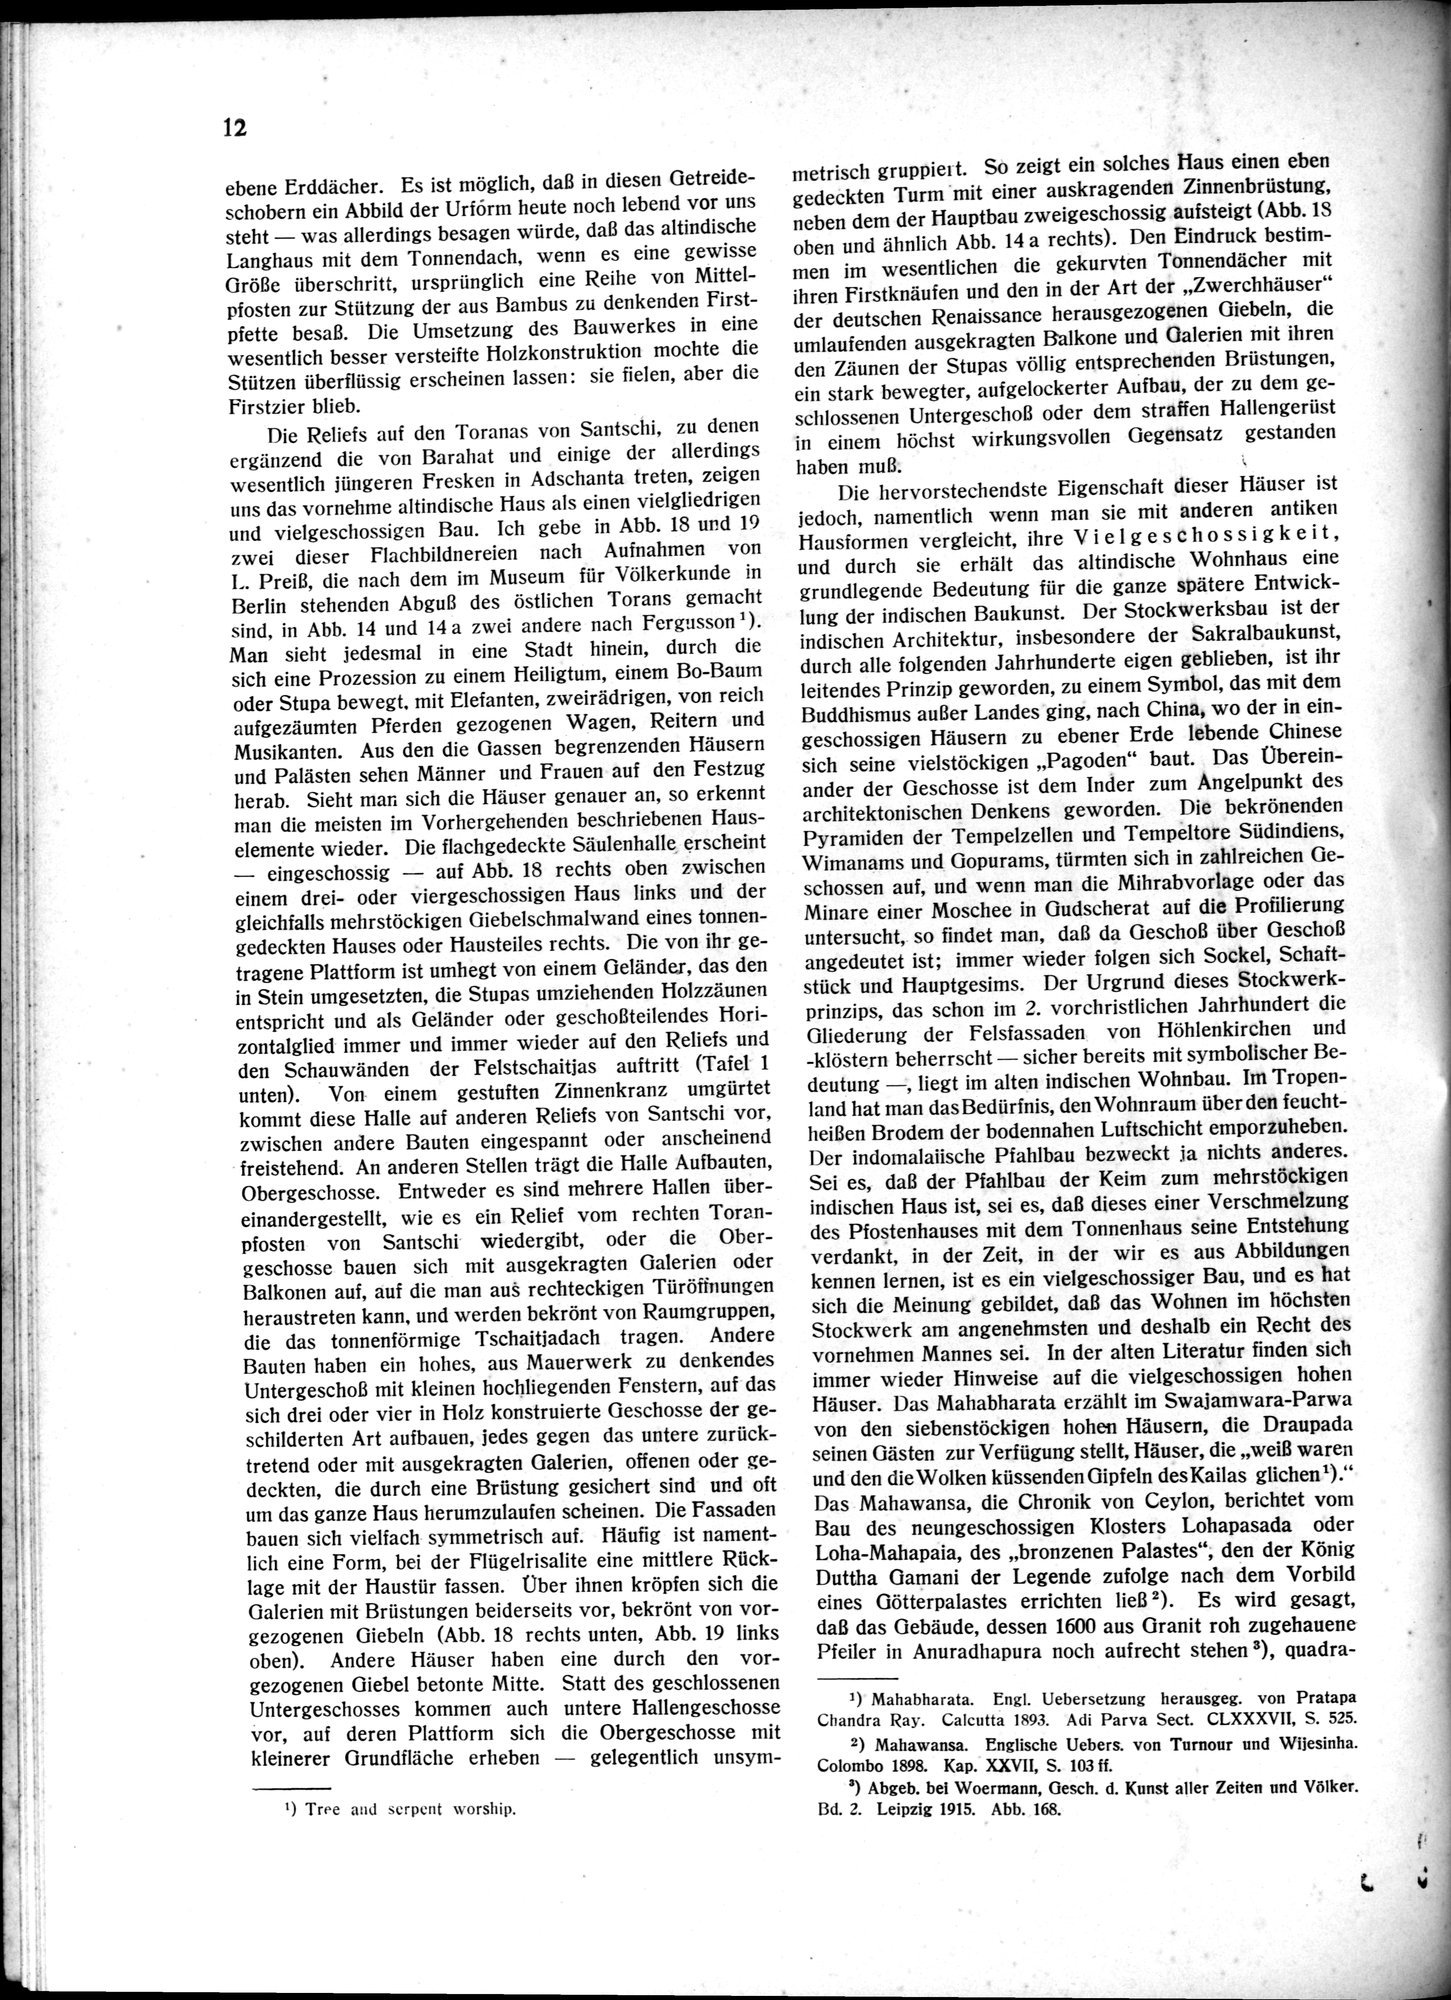 Indische Palaste und Wohnhauser : vol.1 / Page 22 (Grayscale High Resolution Image)